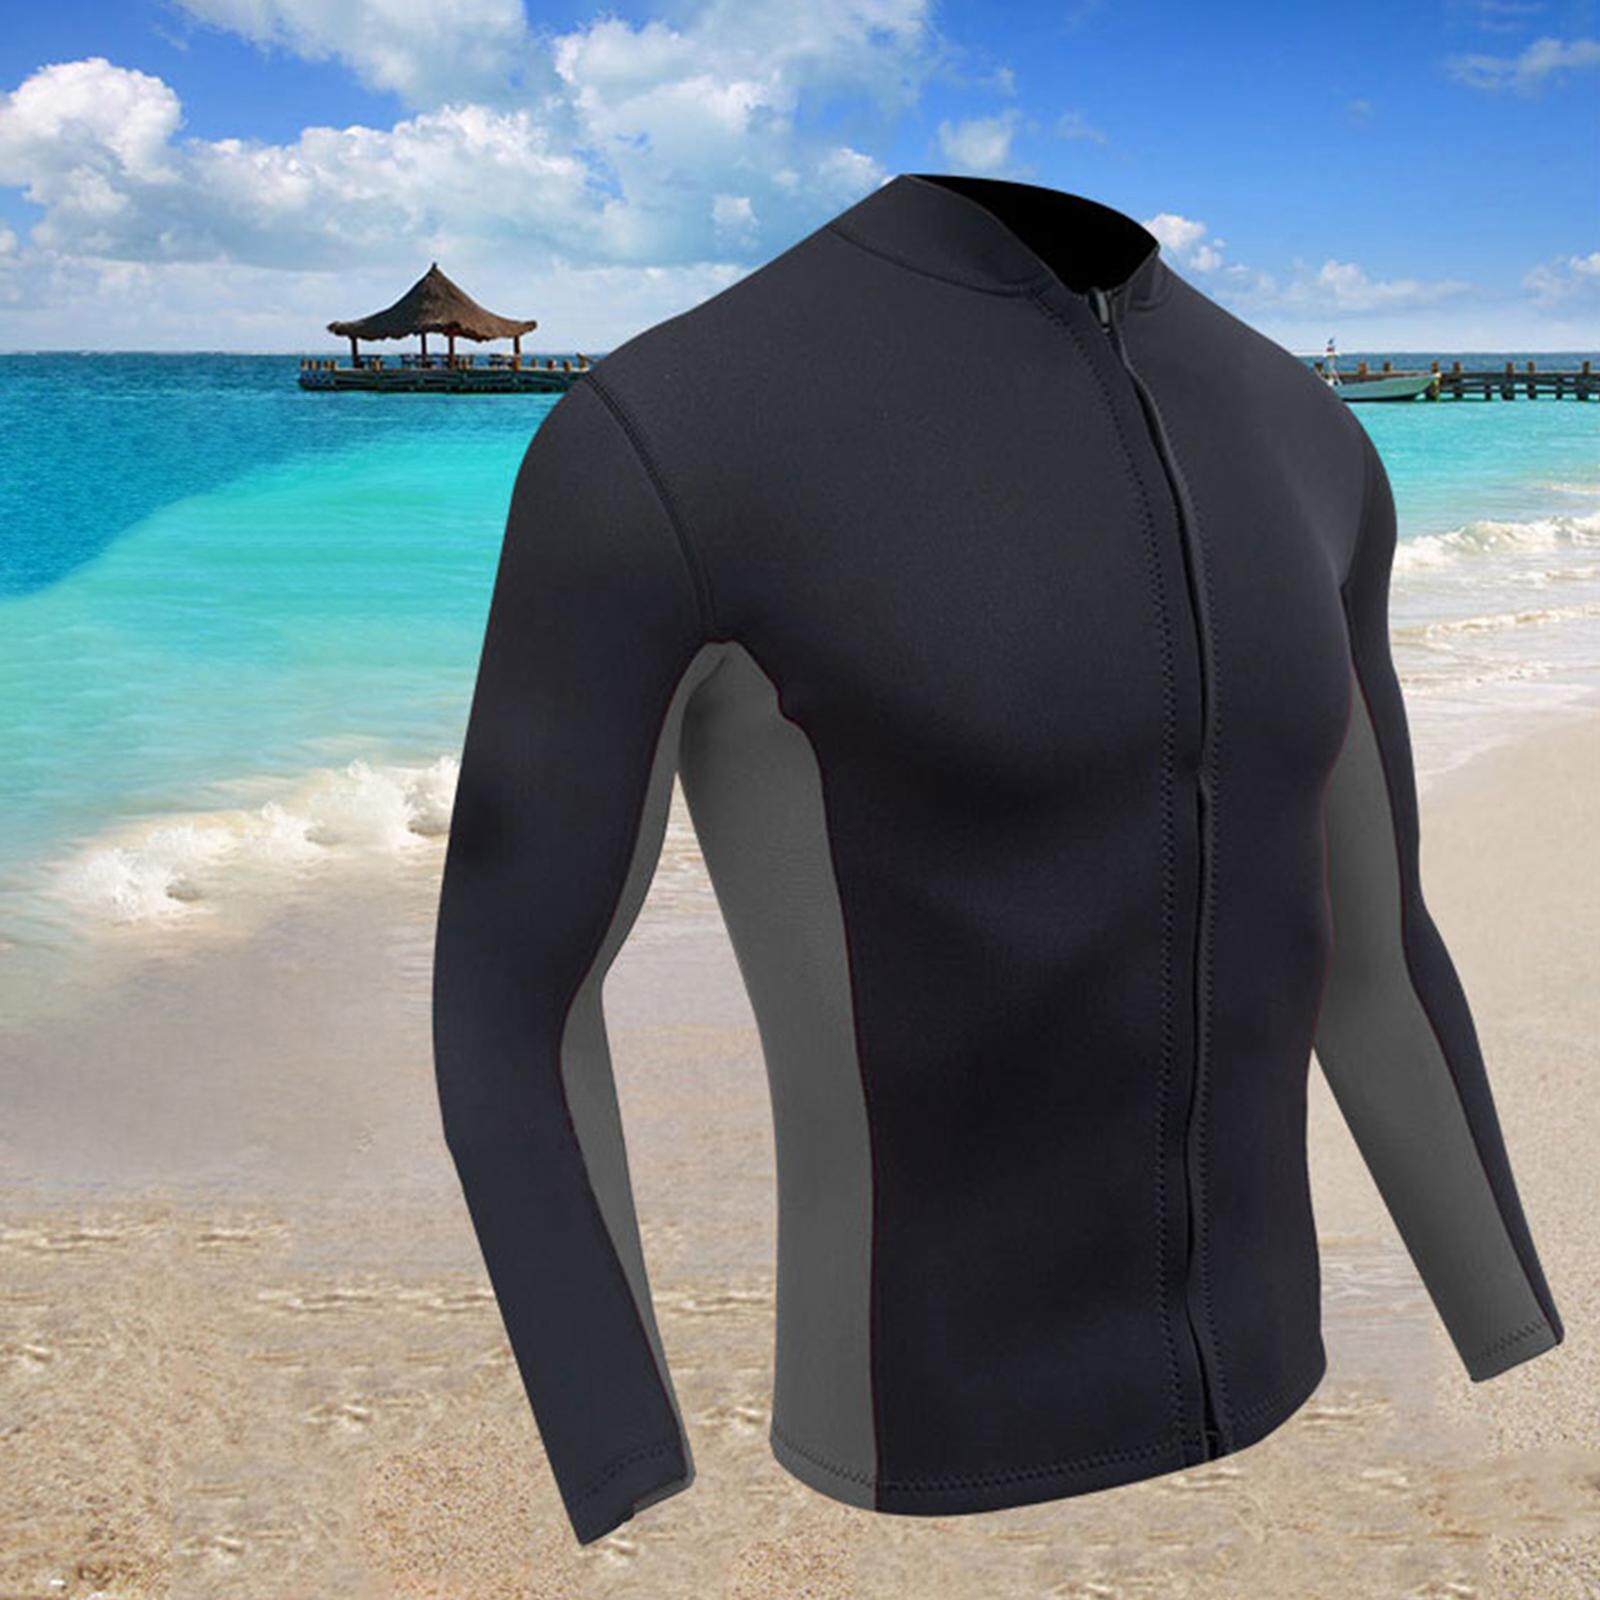 Flameer Wetsuit Jacket Premium Neoprene 2mm Long Sleeve Front Zip Wetsuit  Top for Women/Men | Lazada